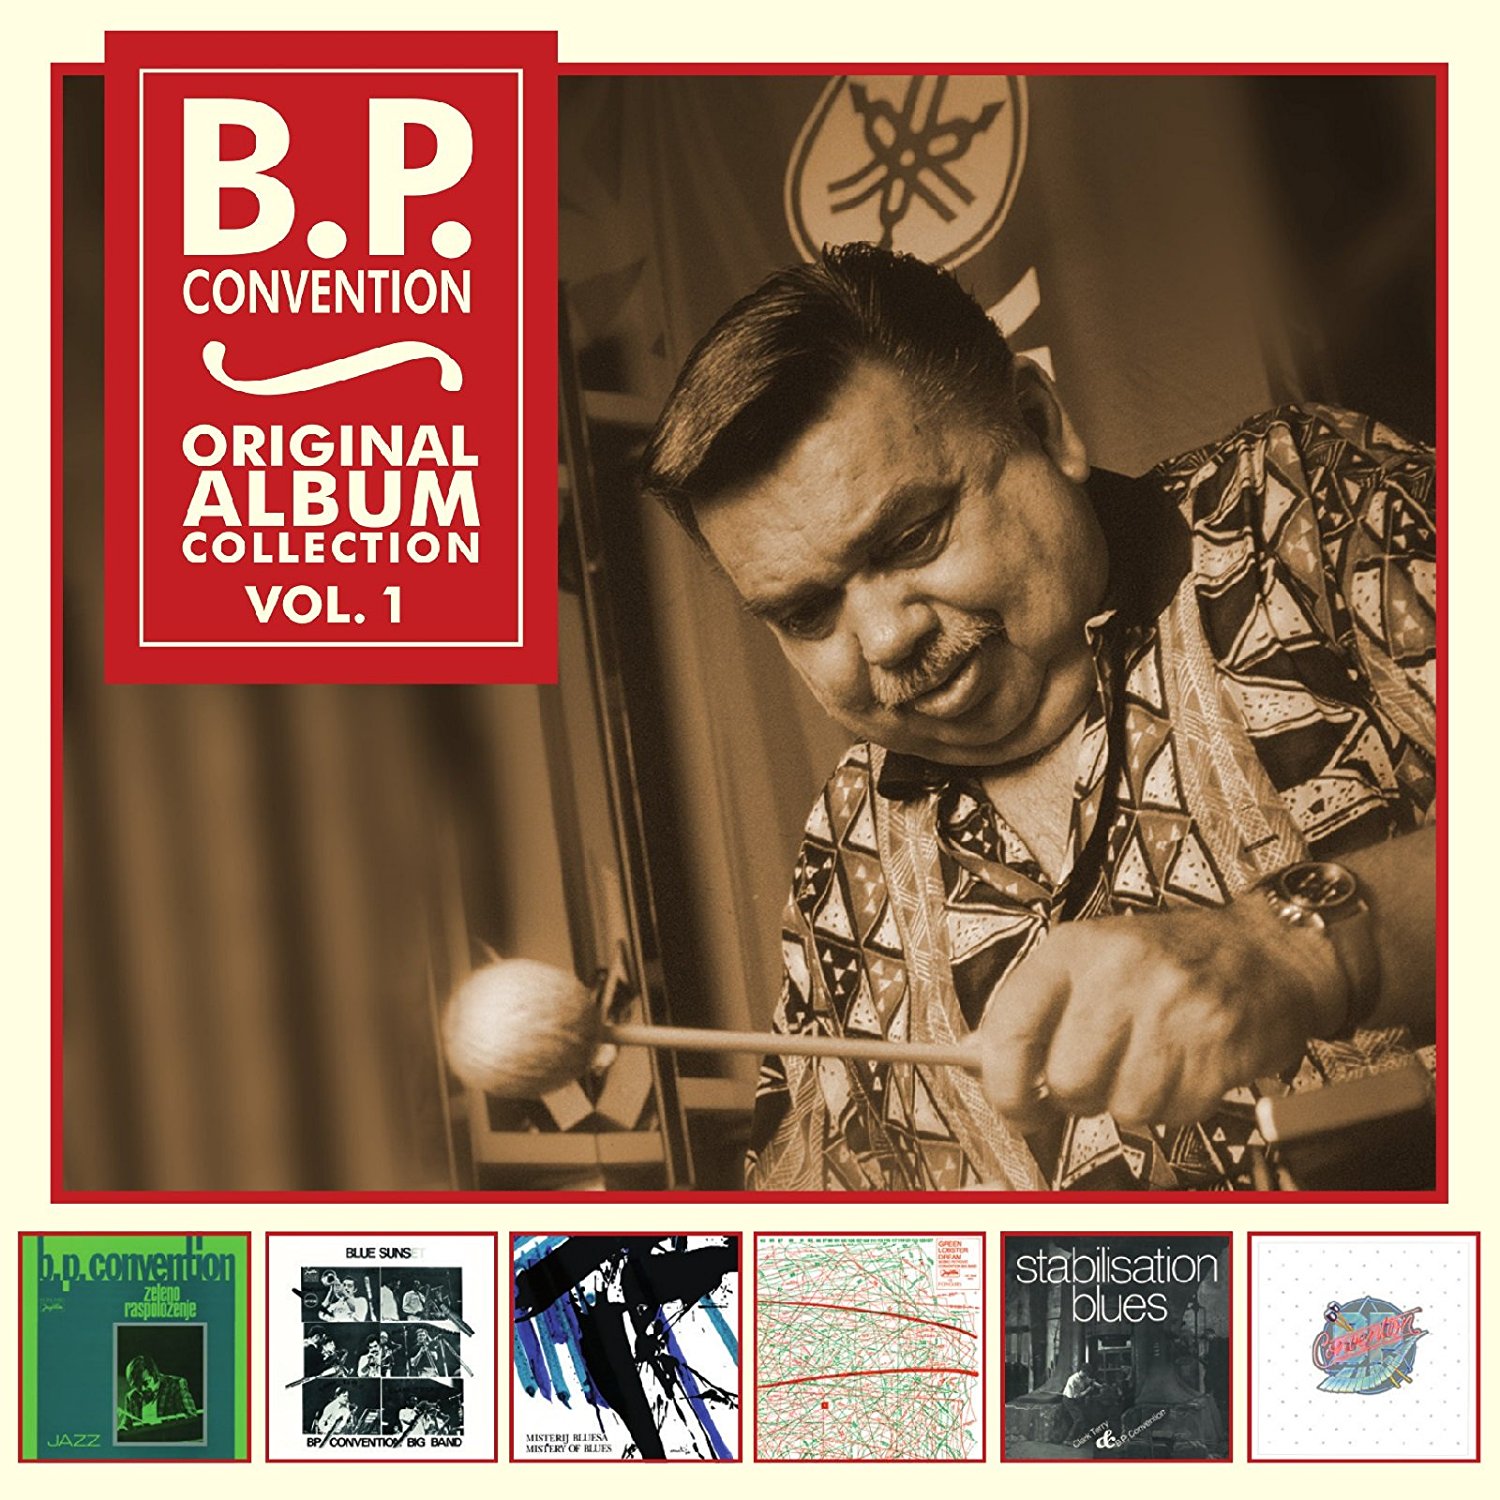 B.P. Convention - Original Album Collection, Vol. 1